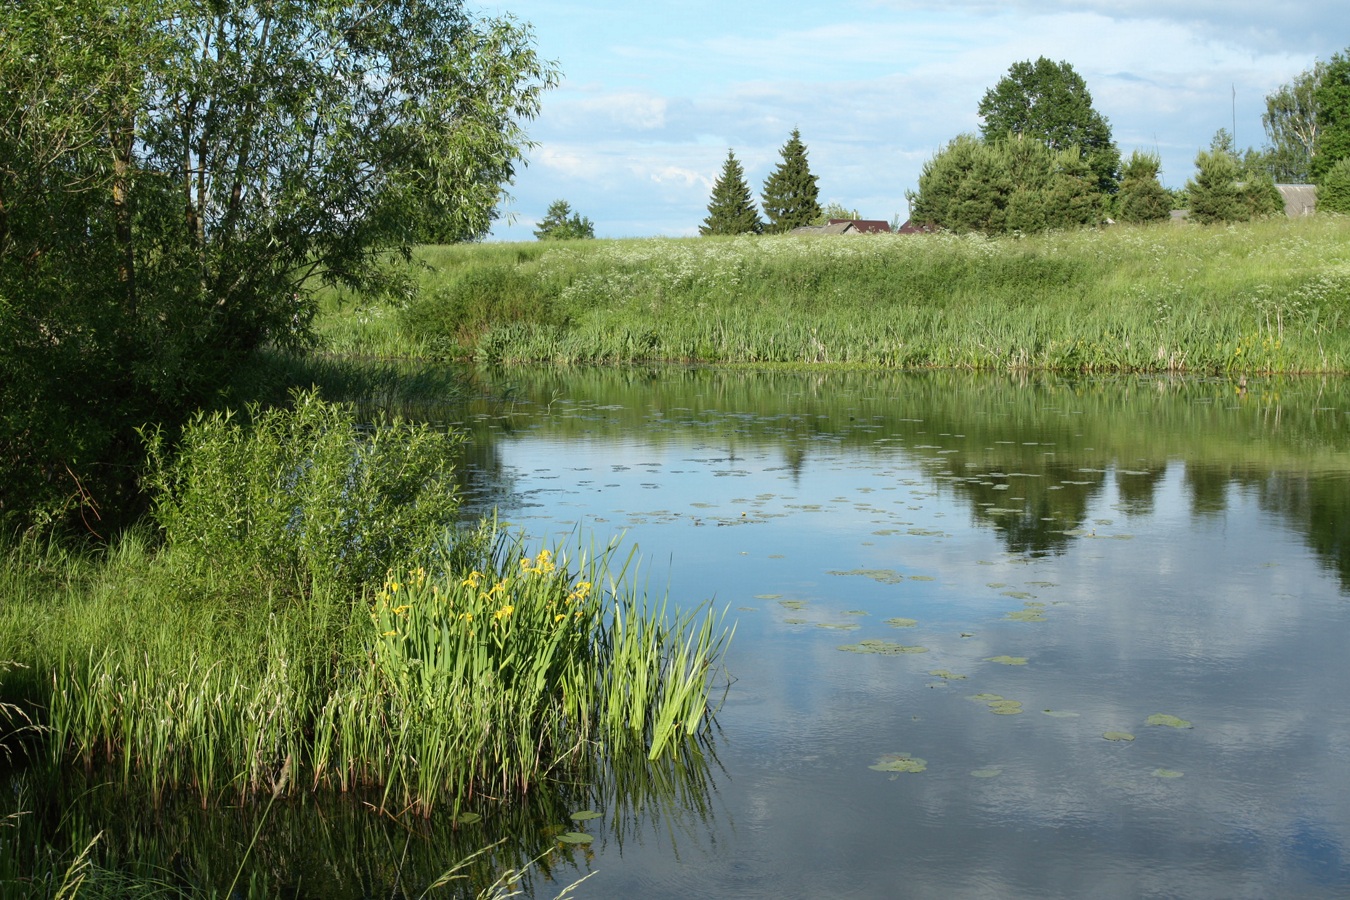 Езерище и окрестности, изображение ландшафта.